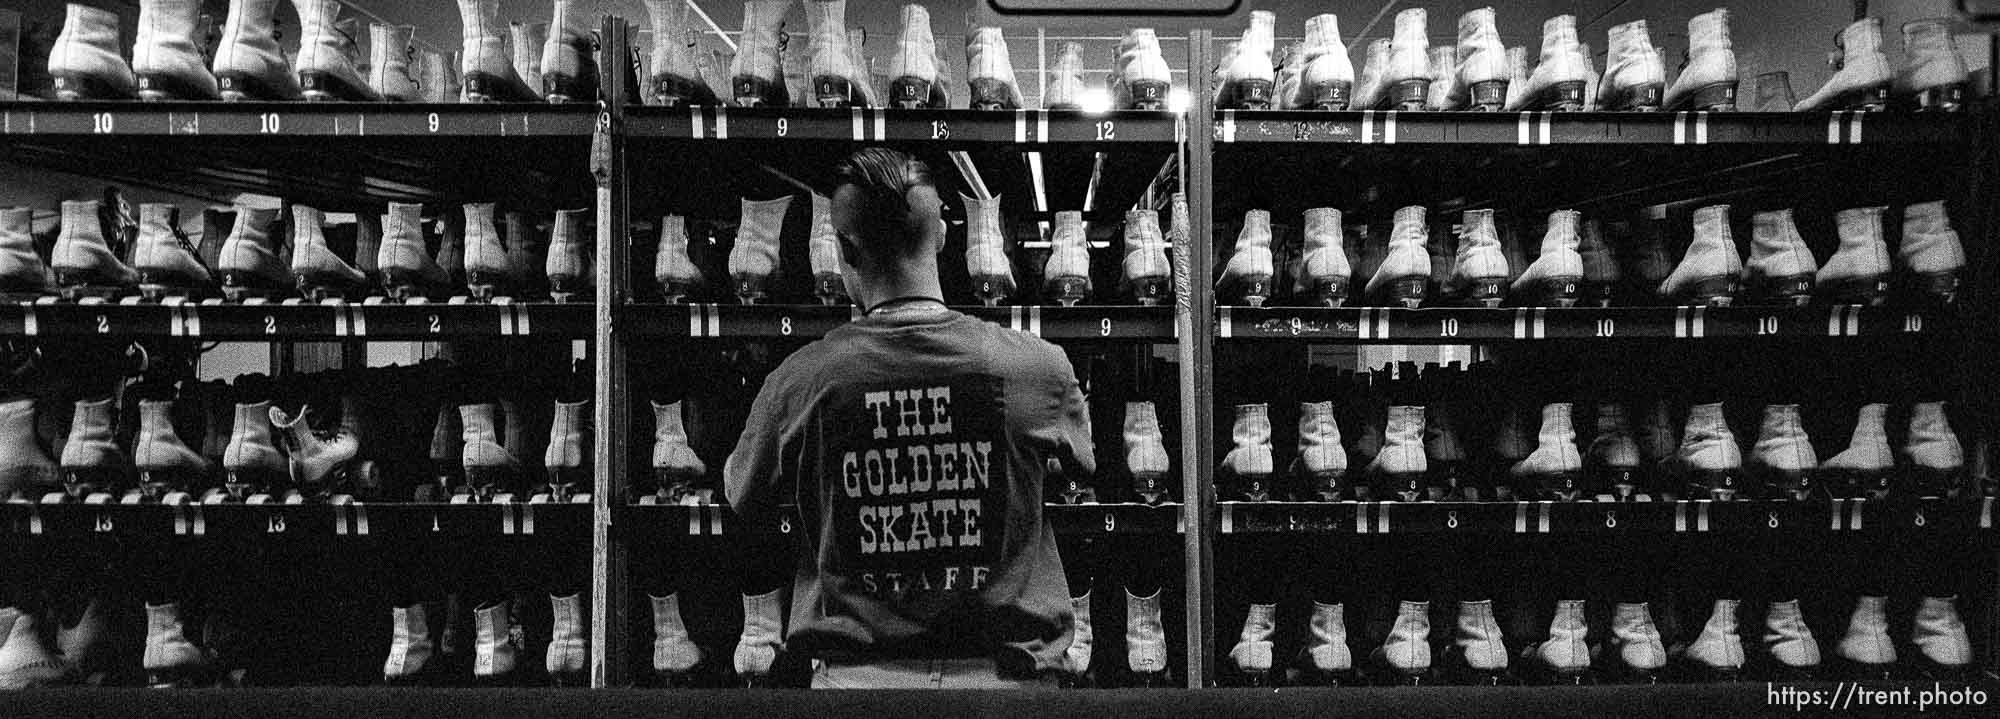 The Golden Skate